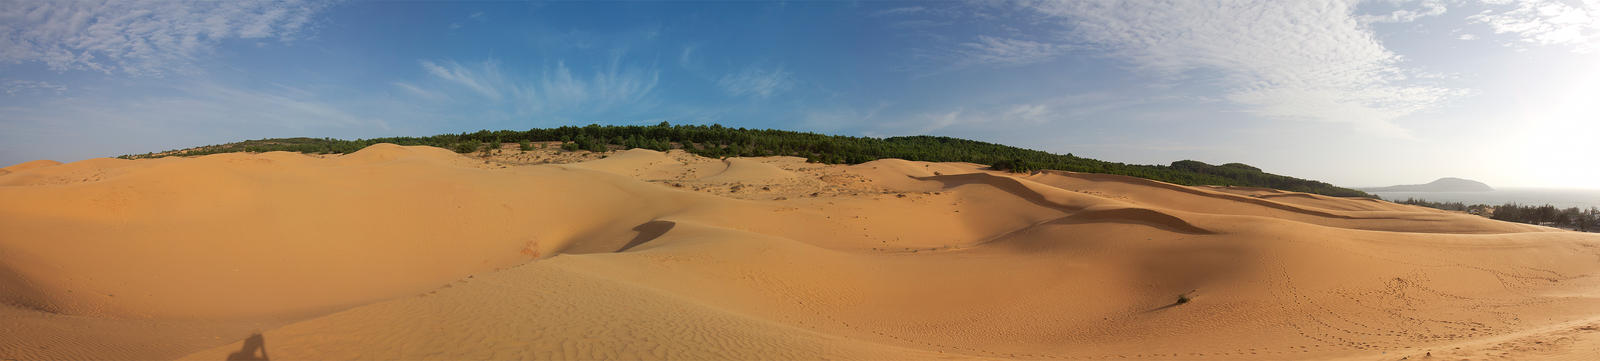 Mui Ne- Red sand dunes